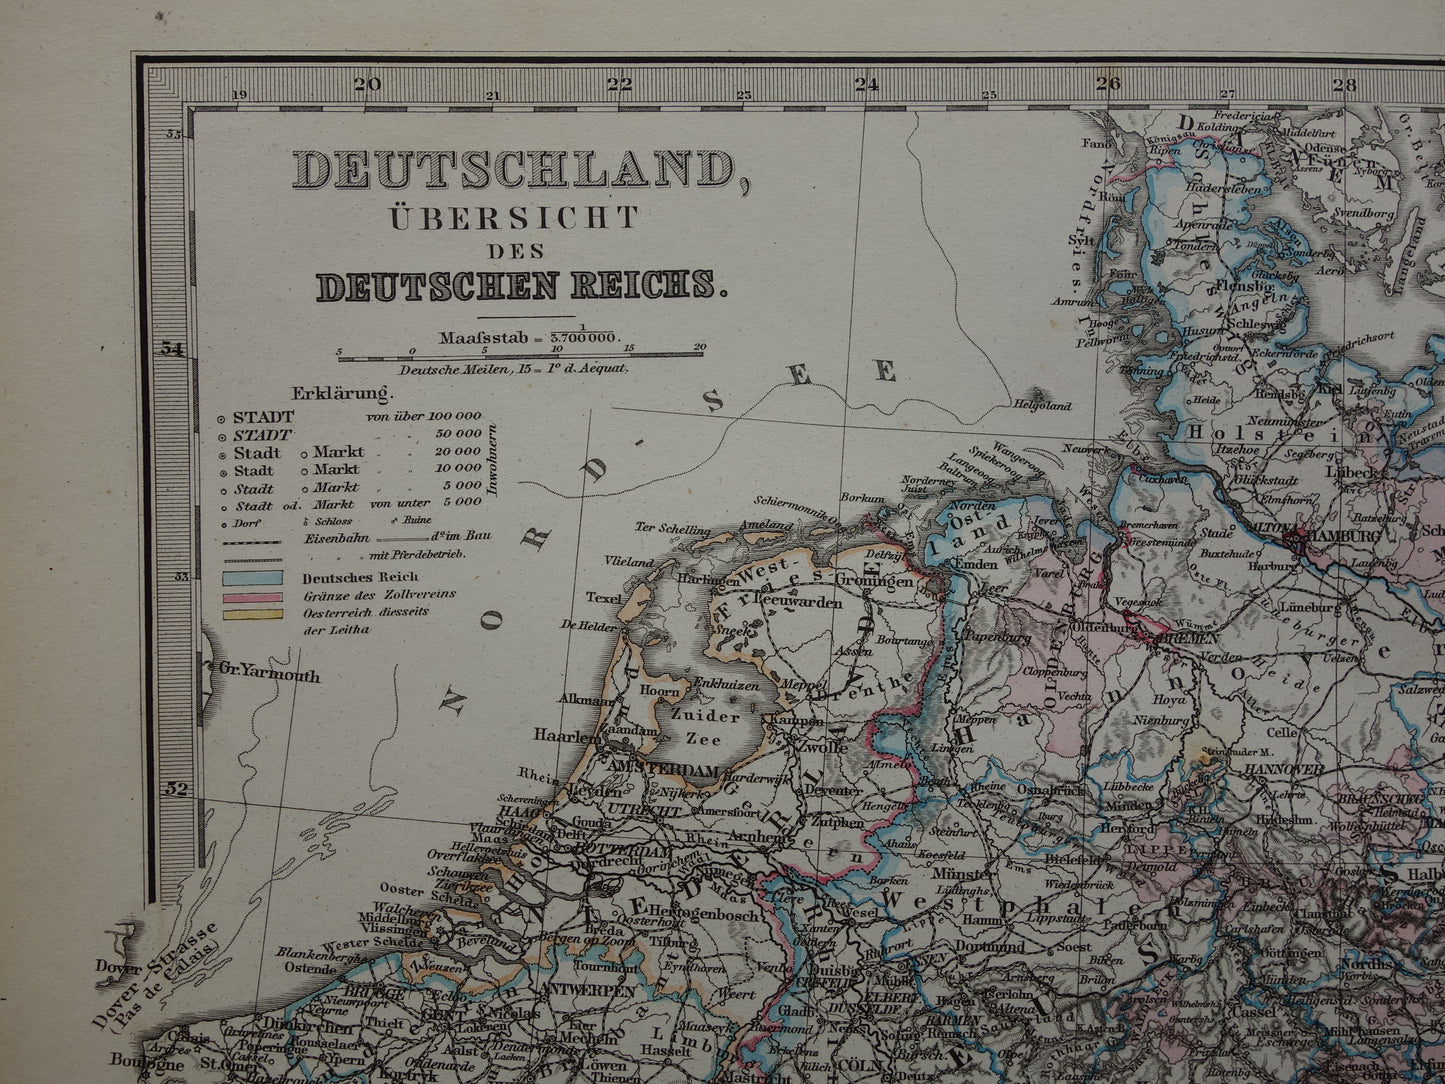 DUITSLAND Antieke landkaart van het Duitse Rijk in 1876 Grote originele 145+ jaar oude kaart Berlijn Pruissen Polen